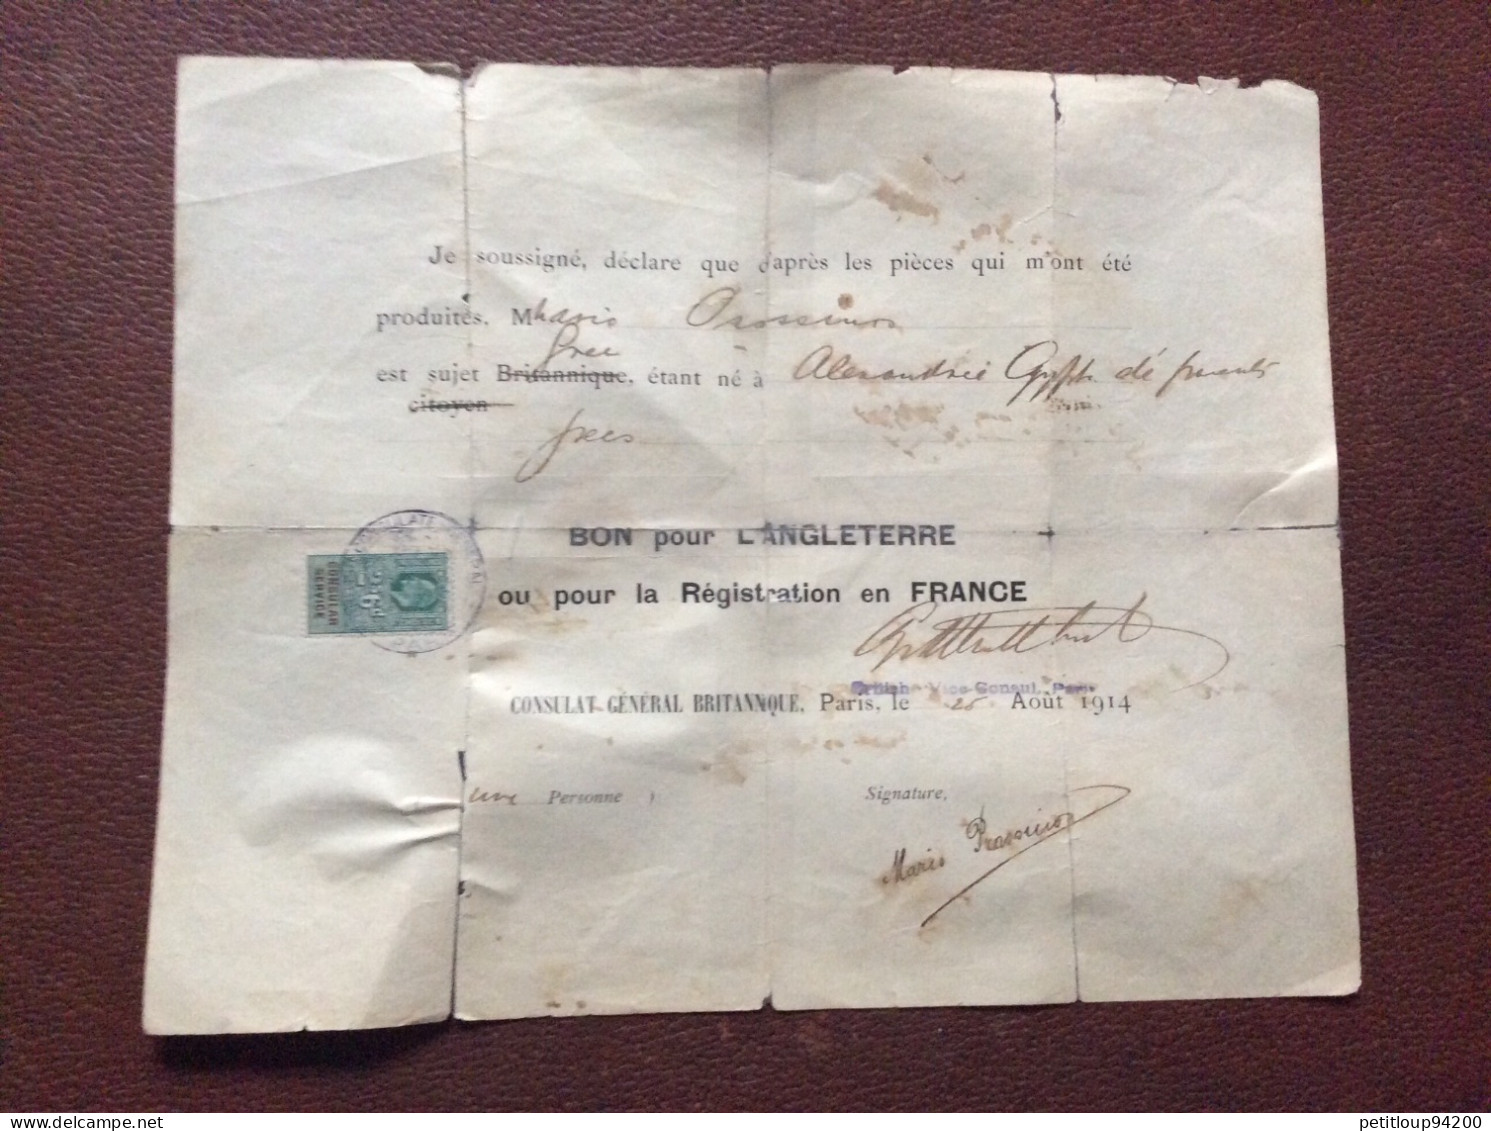 TIMBRE FISCAL SUR DOCUMENT Bon Pour L’ANGLETERRE  Registration En FRANCE  *2s 6d  CONSULAT GENERAL BRITANIQUE  1914 - Fiscale Zegels